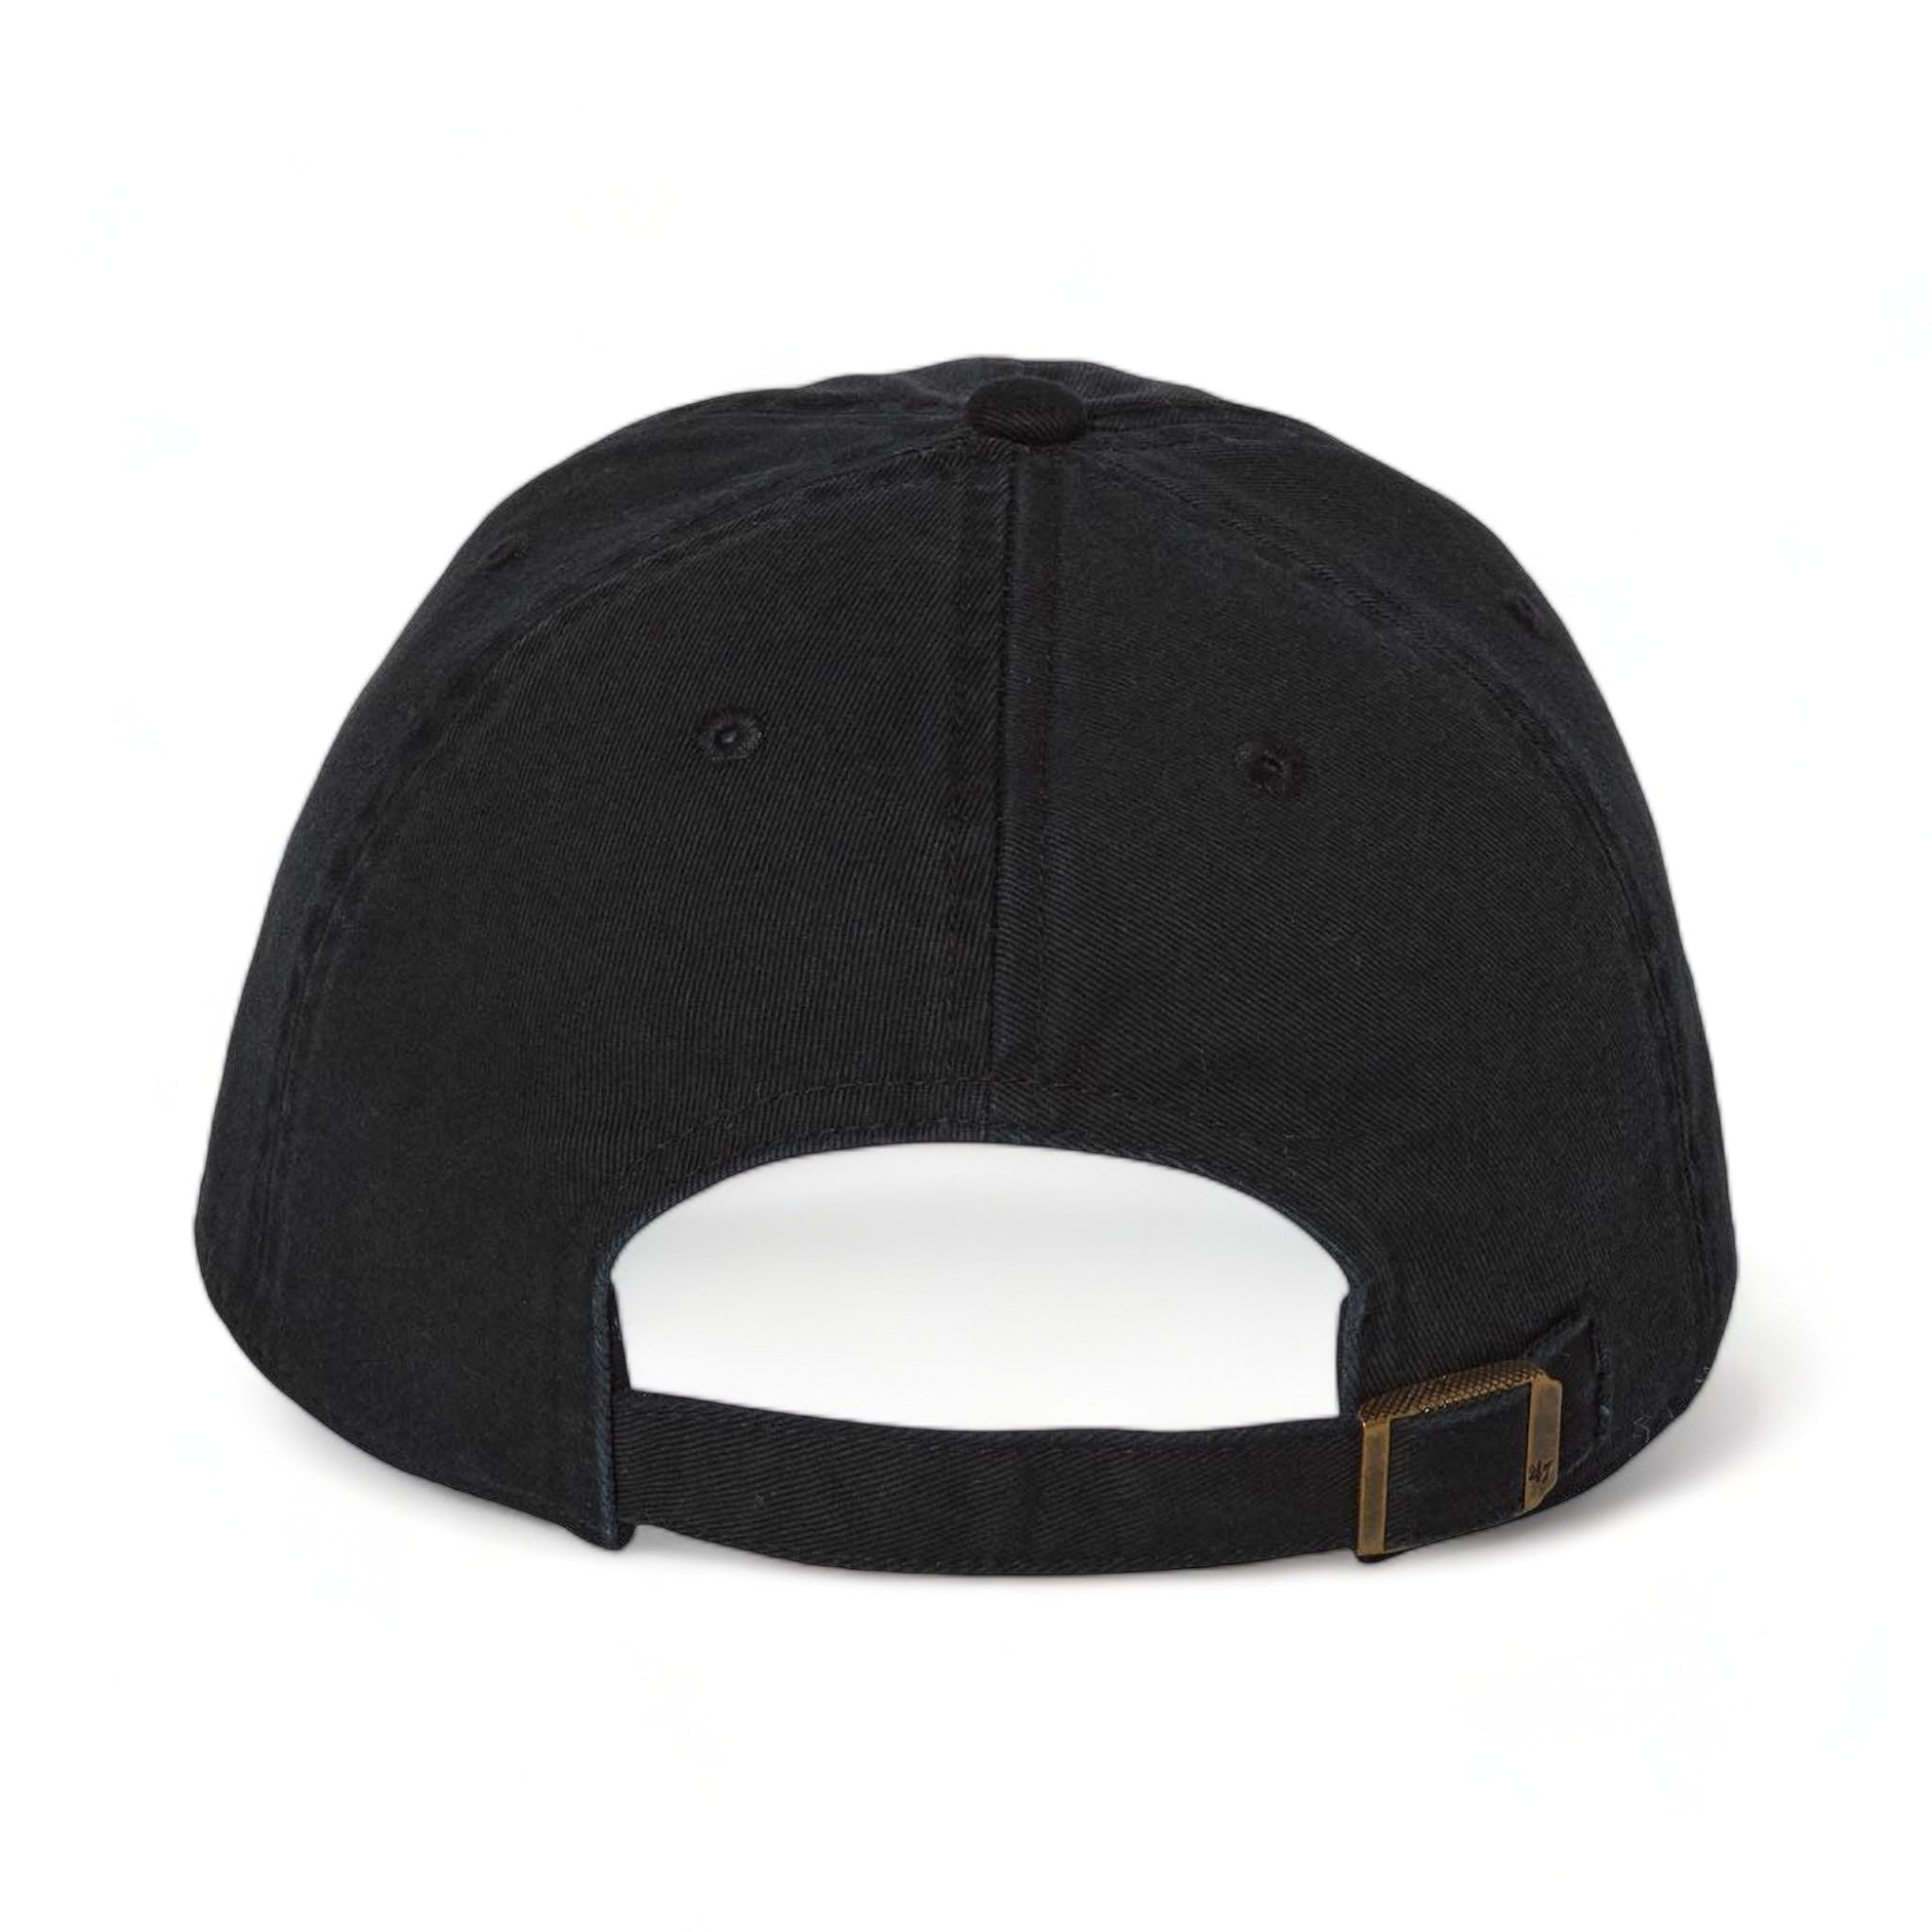 Back view of 47 Brand 4700 custom hat in black